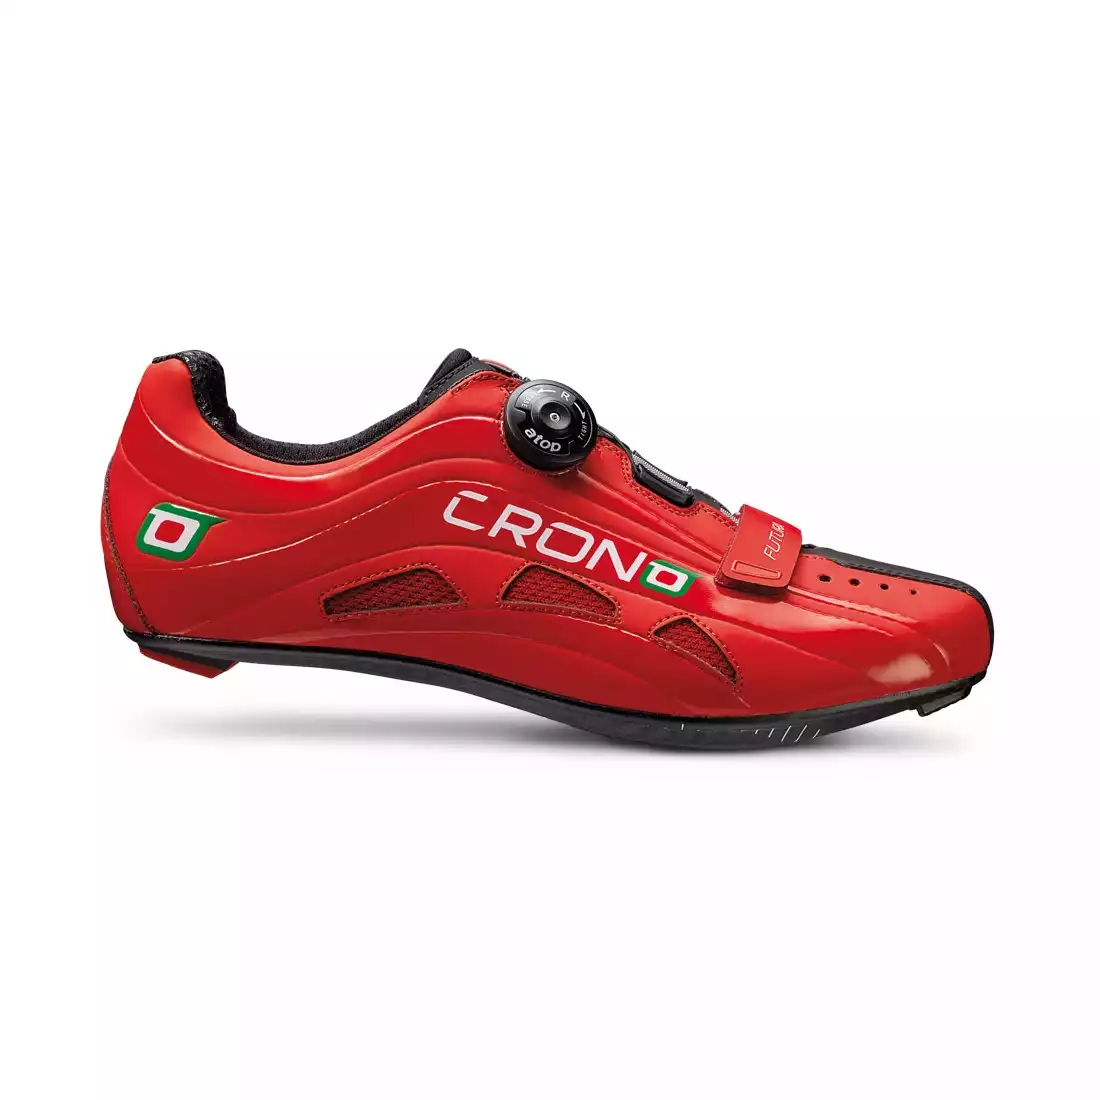 CRONO FUTURA NYLON - buty rowerowe szosowe - kolor: Czerwony